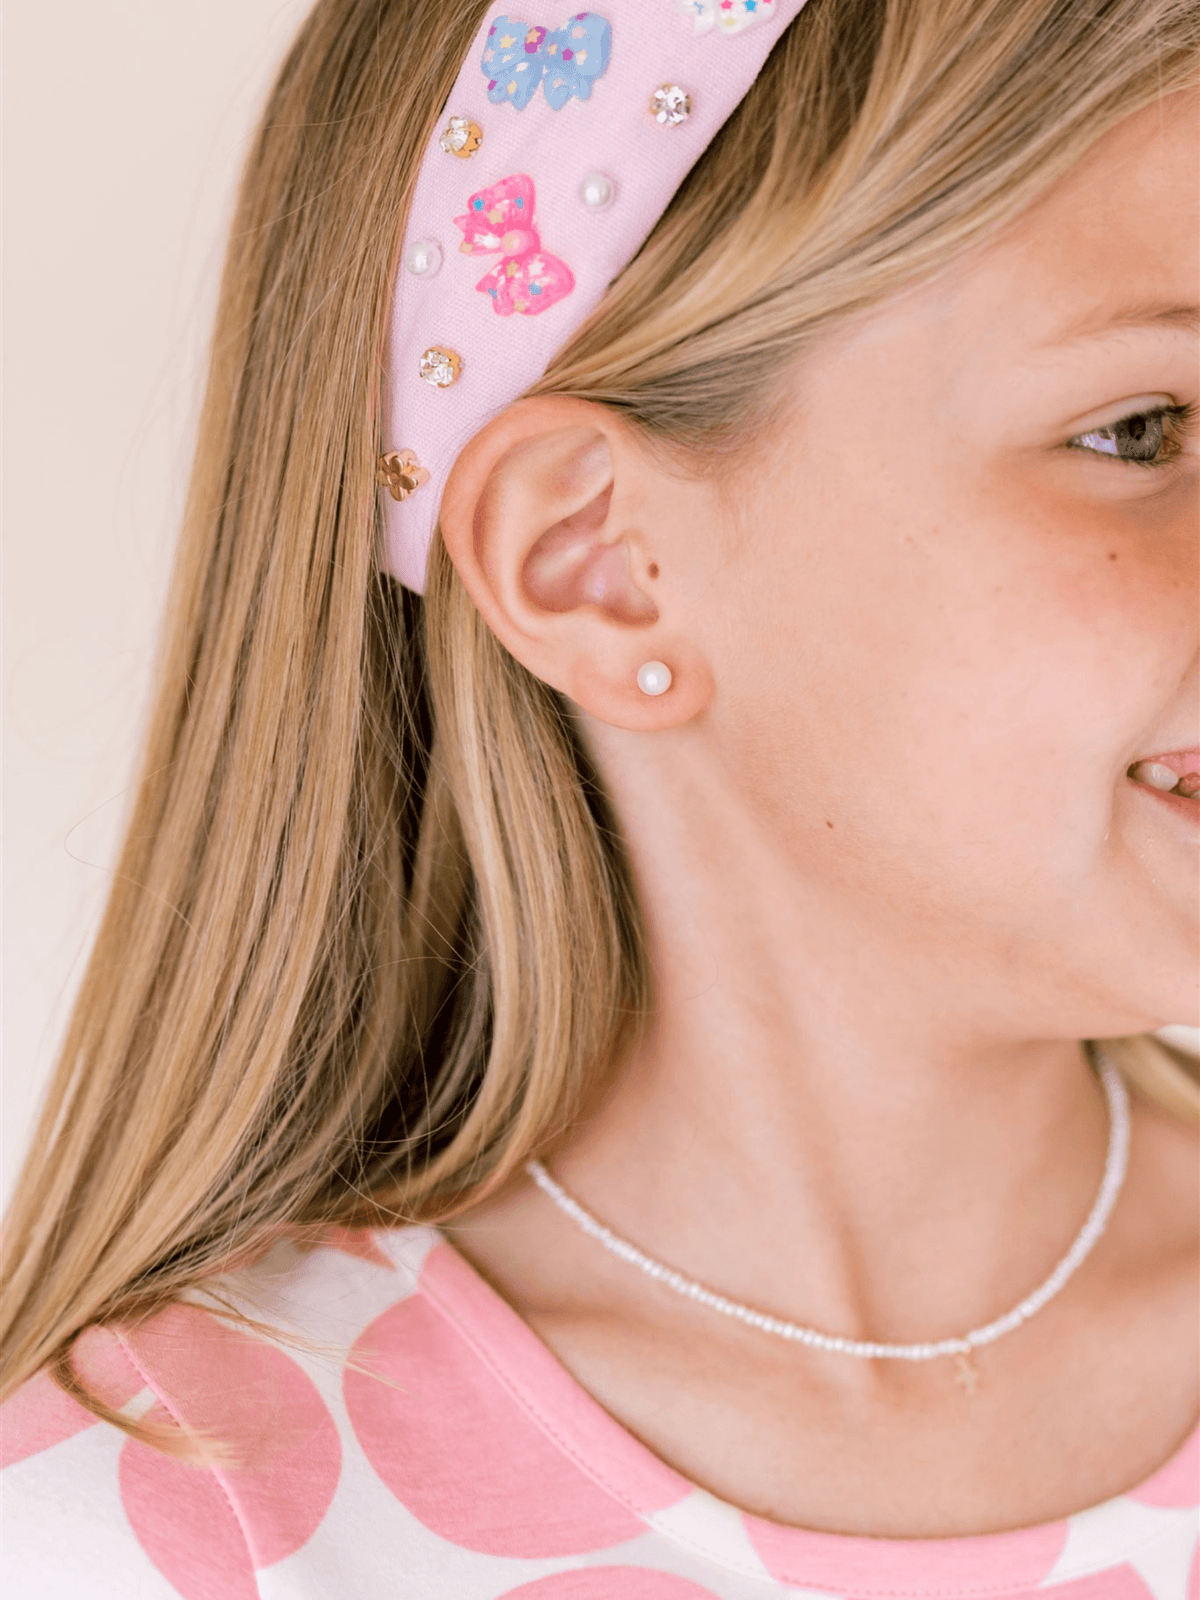 Pearl stud earring on model ear